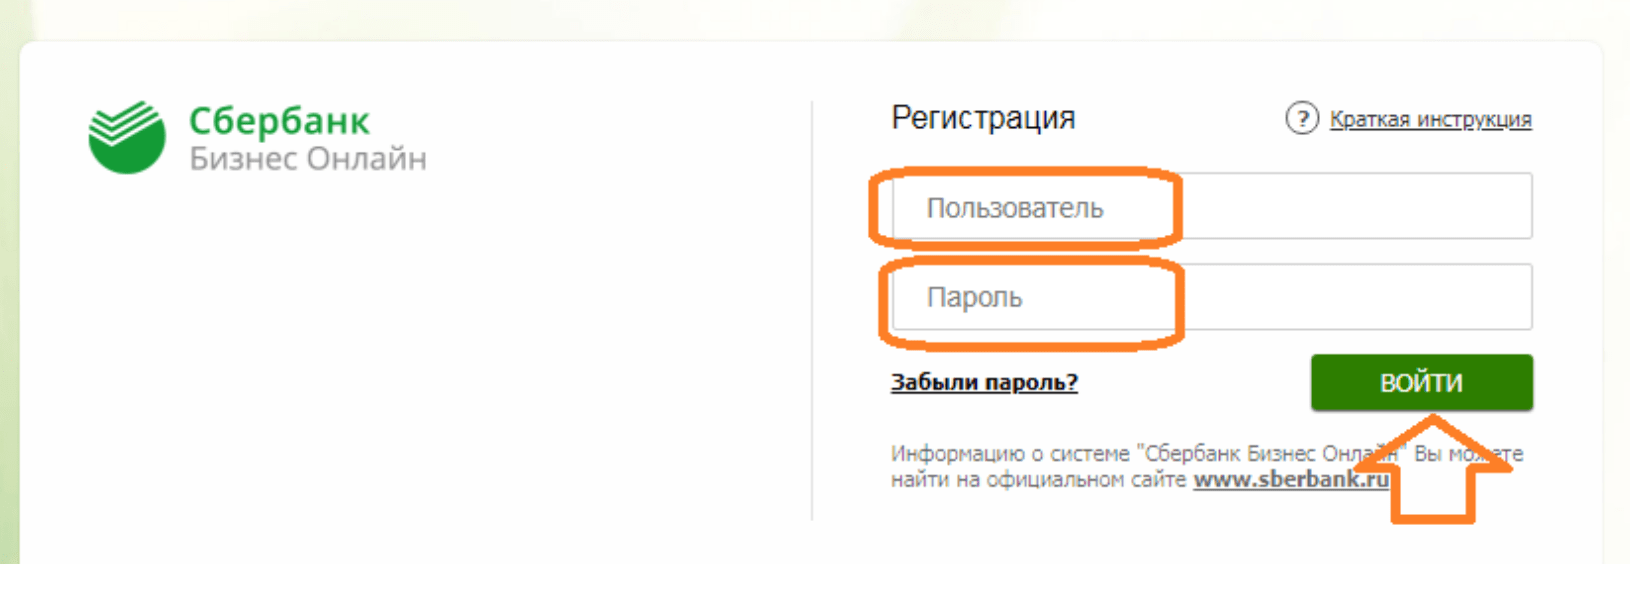 Сбербанк бизнес онлайн ип инструкция валберис где находится в красноярске